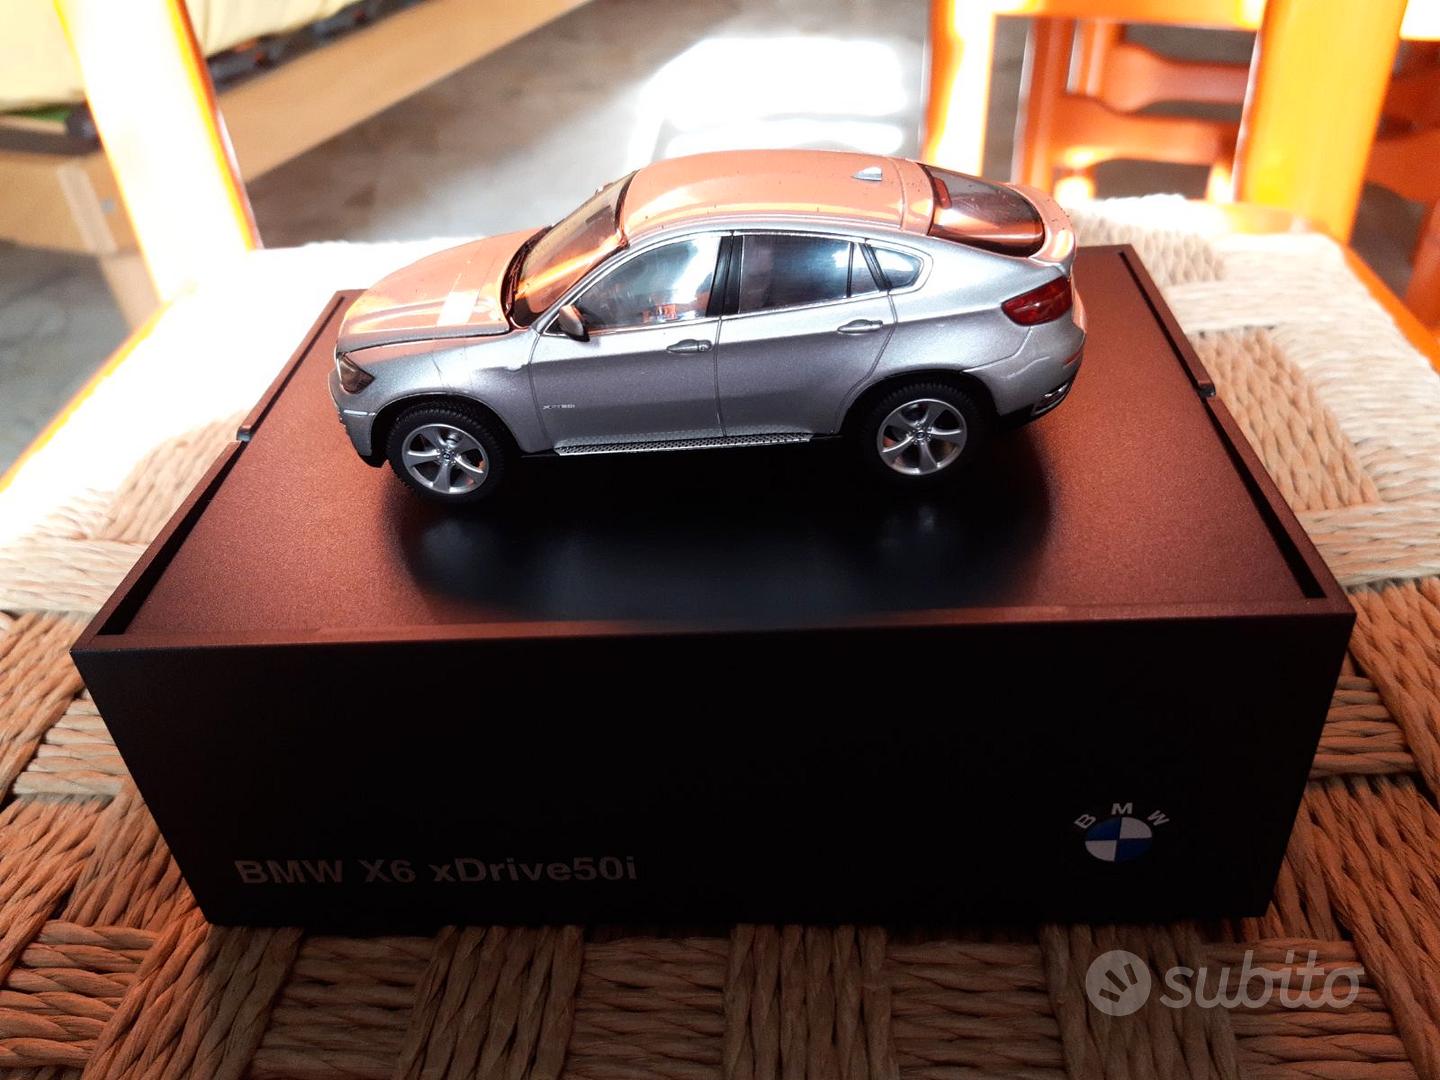 Modellino BMW X6 scala 1:43 - Collezionismo In vendita a Bari